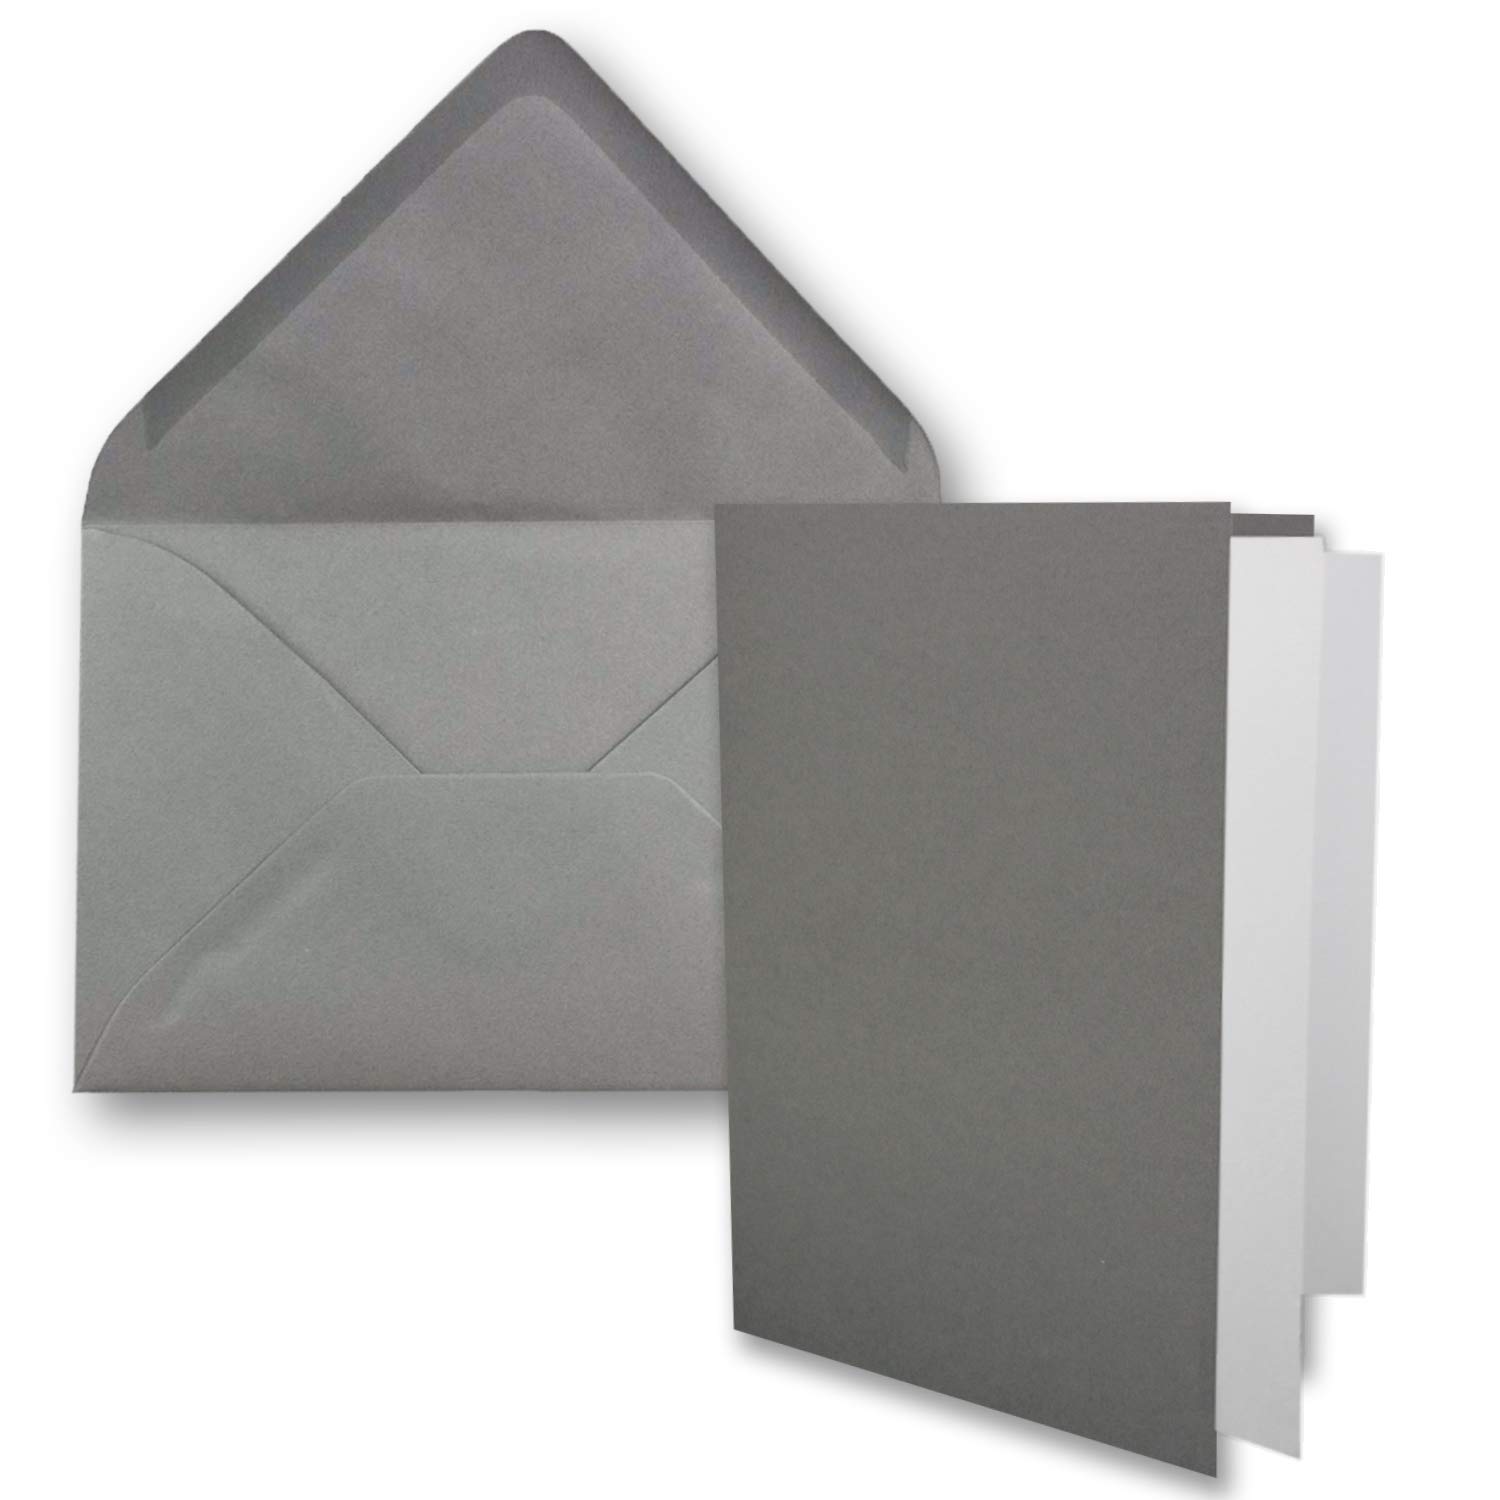 100x DIN B6 Faltkarten-Set - Graphit-Grau - 115 x 170 mm - 11,5 x 17 cm - Doppelkarten mit Umschlägen und Einleger-Papier - FarbenFroh by GUSTAV NEUSER